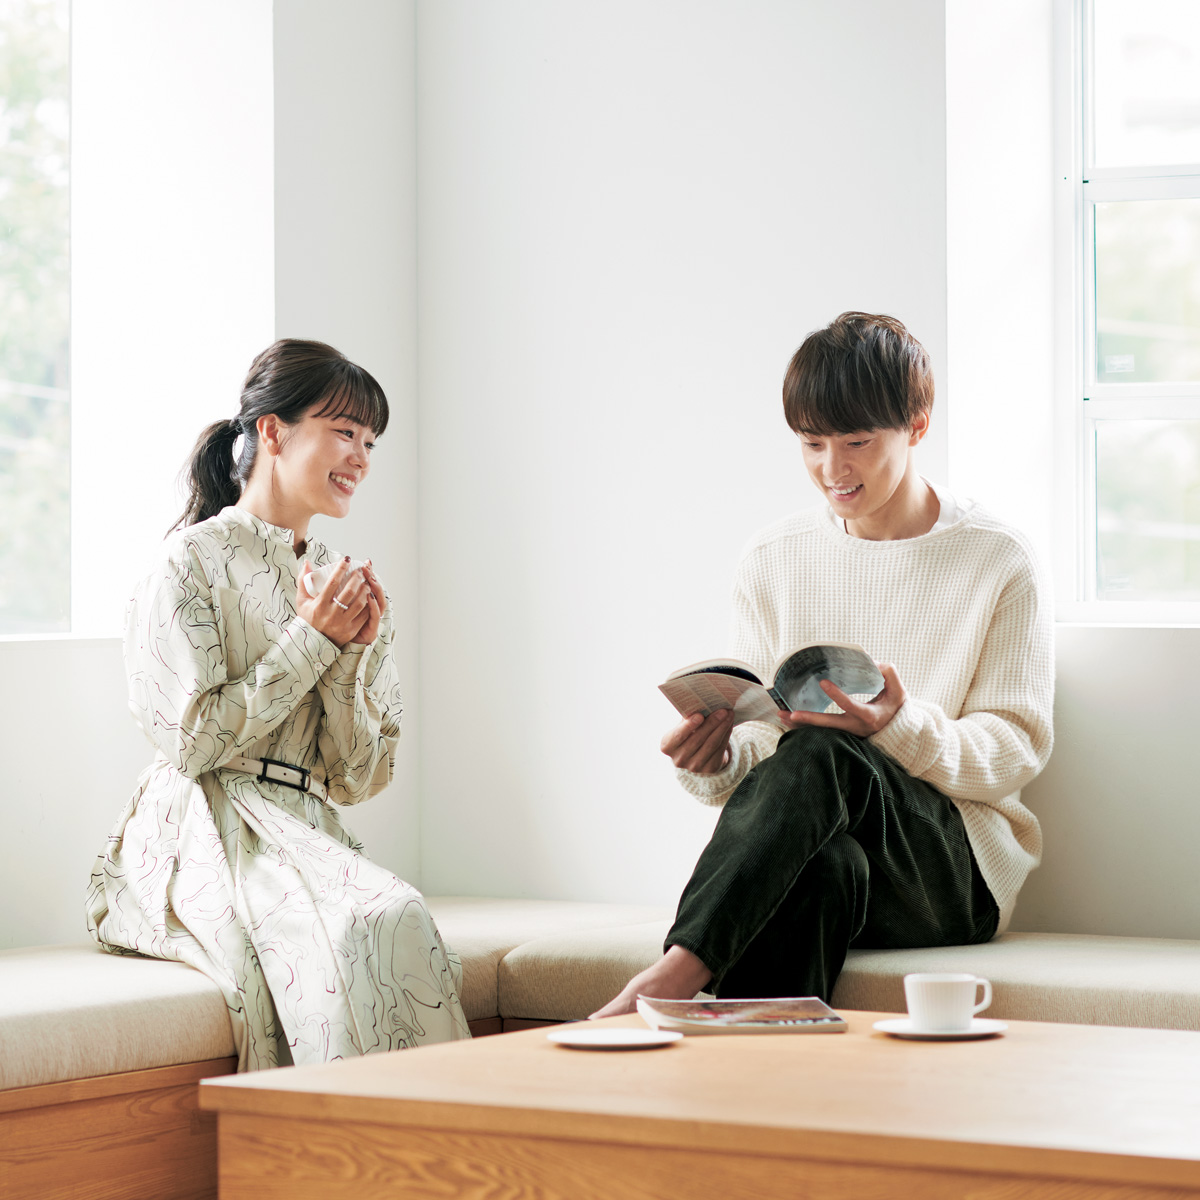 【五十嵐 圭・本田朋子夫妻】便利さよりも心地よさを意識するようになった。